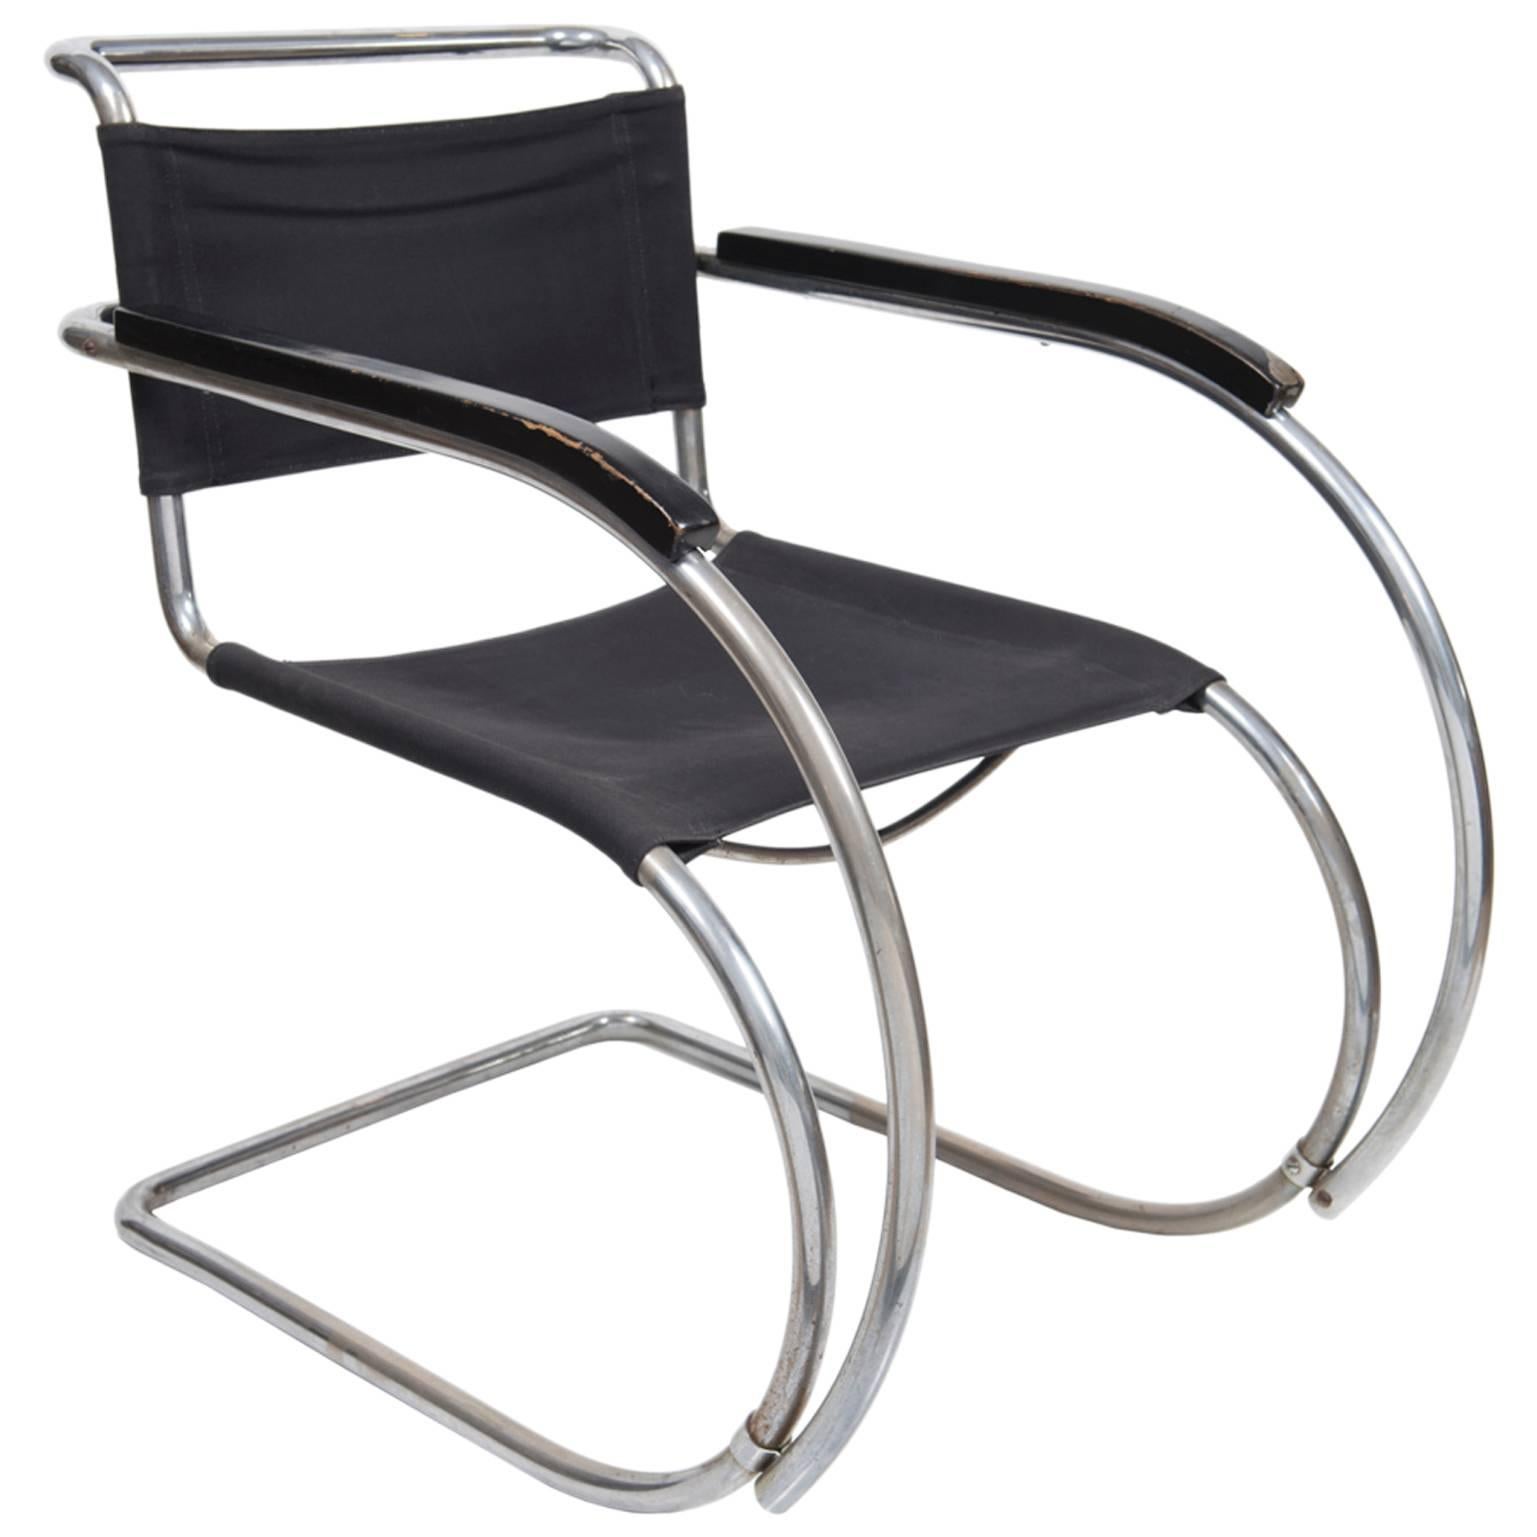 Ludwig Mis van der Rohe Mr 20 Cantilever Chair Design Weißenhof, 1927